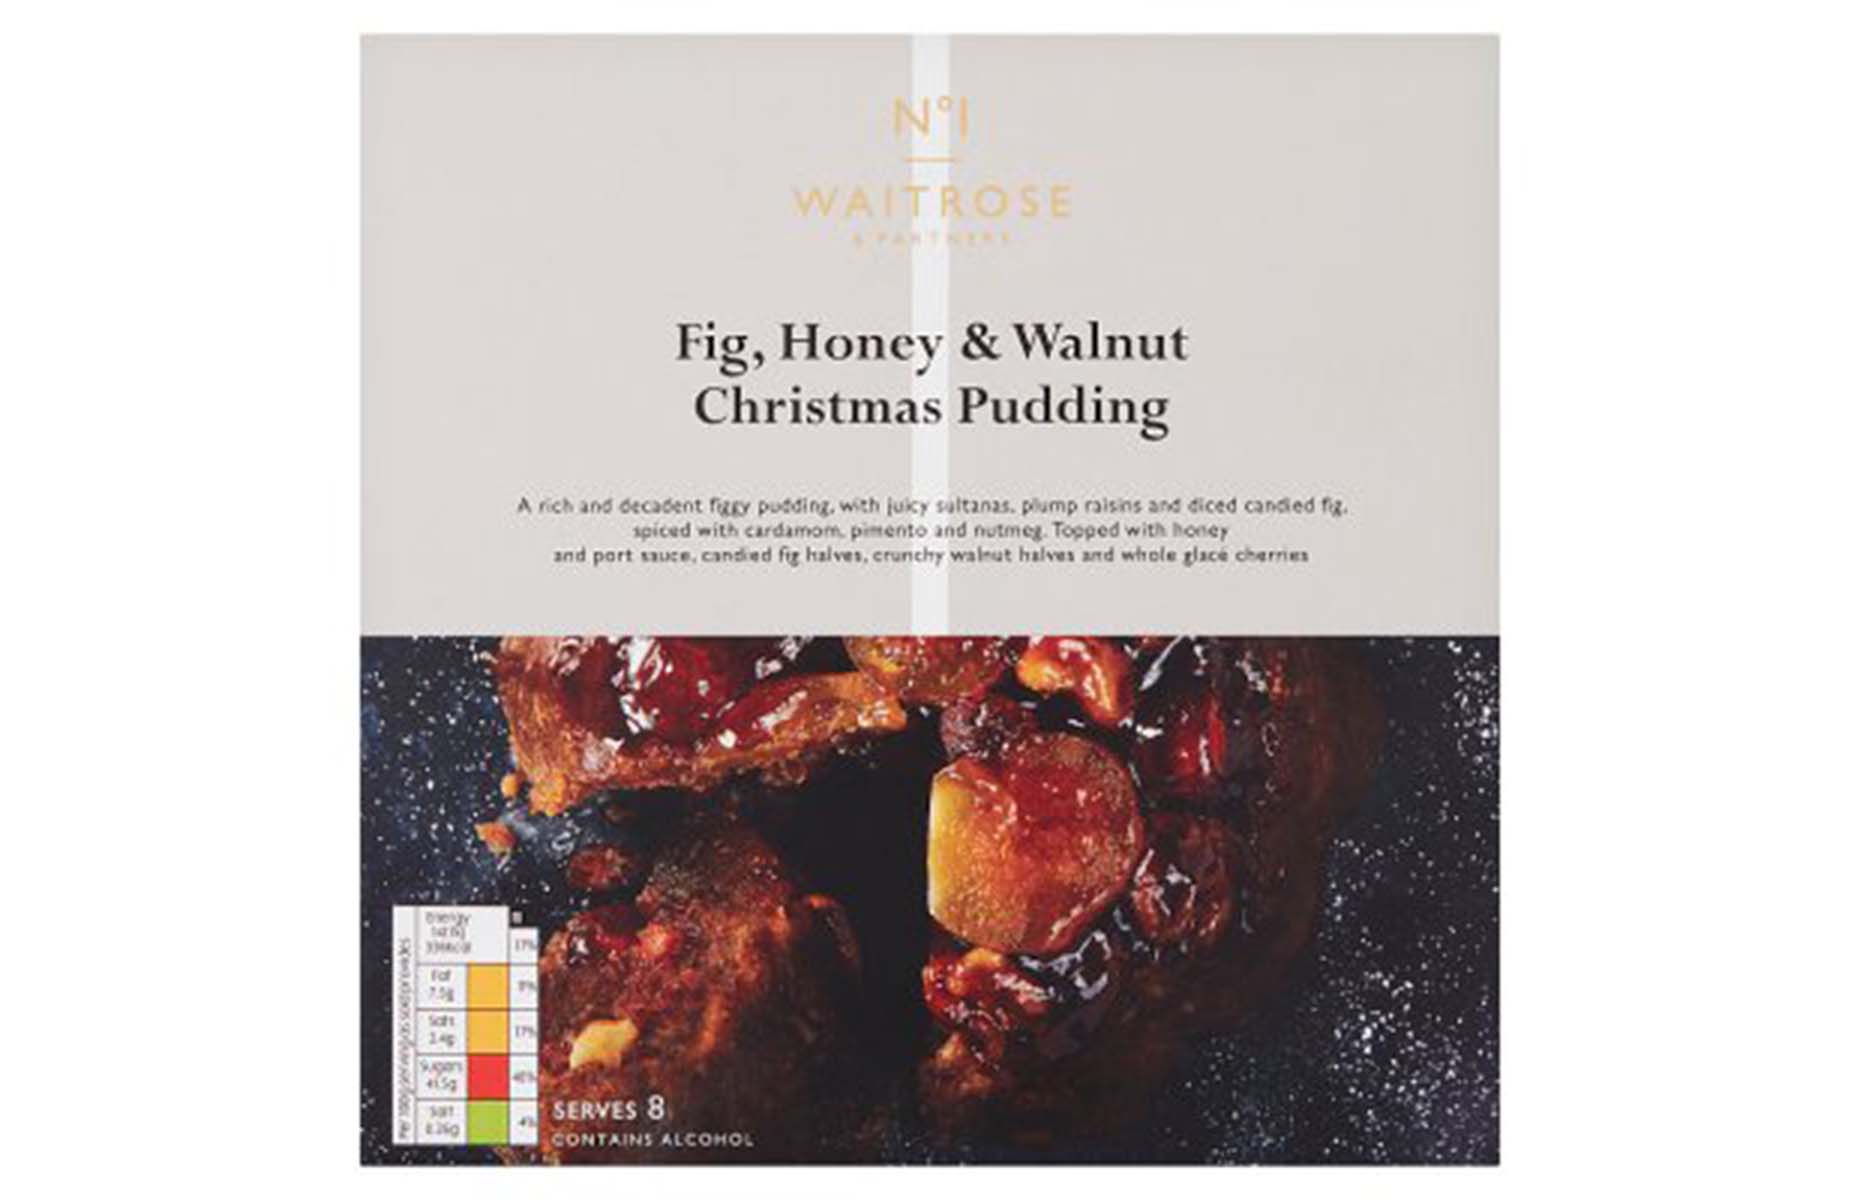 Waitrose No.1 fig, honey & walnut Christmas pudding 2021